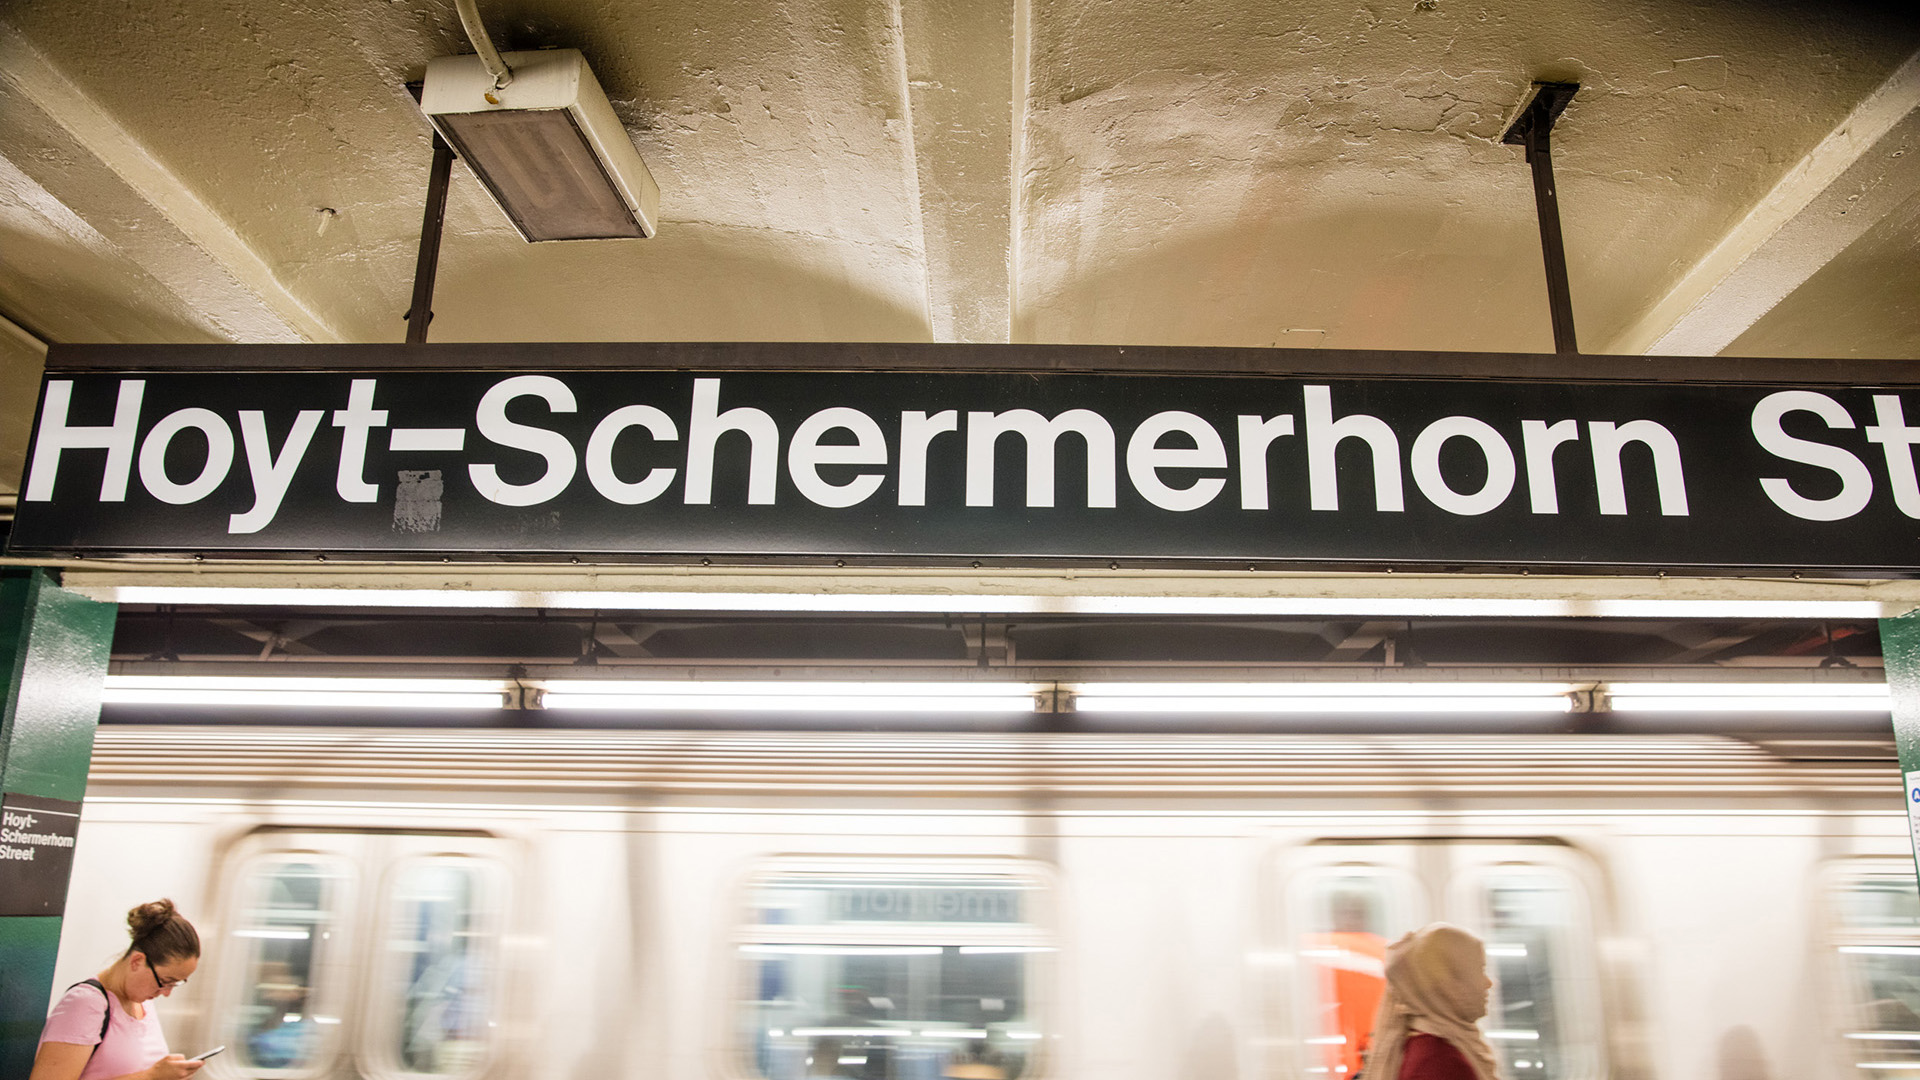 Hoyt-Schermerhorn Subway Sign